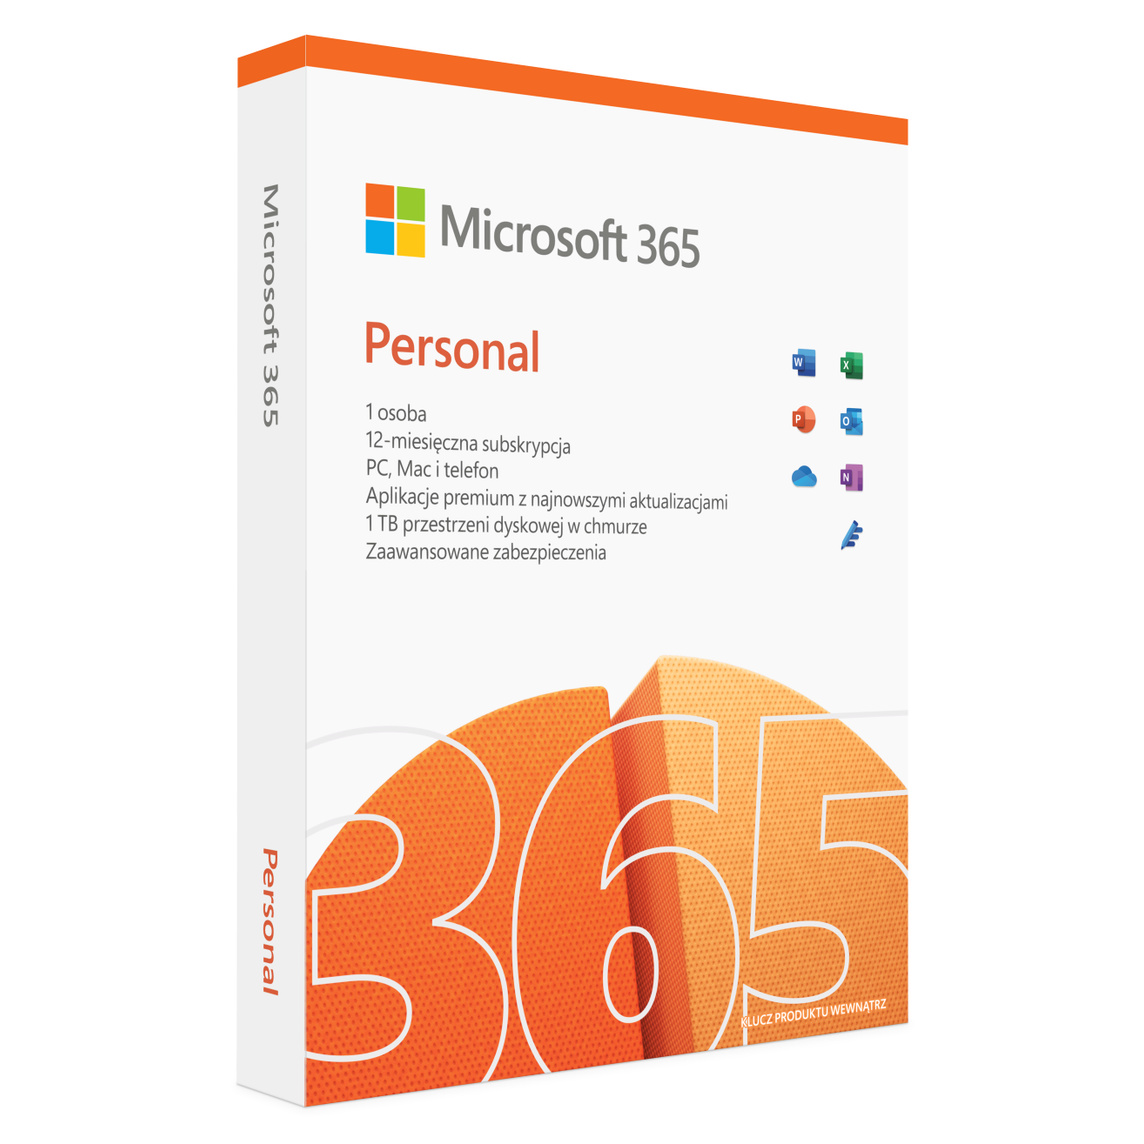 Produkt Microsoft 365 Personal to roczna subskrypcja aplikacji pakietu Office i poczty elektronicznej w wersji premium przeznaczona dla jednej osoby.